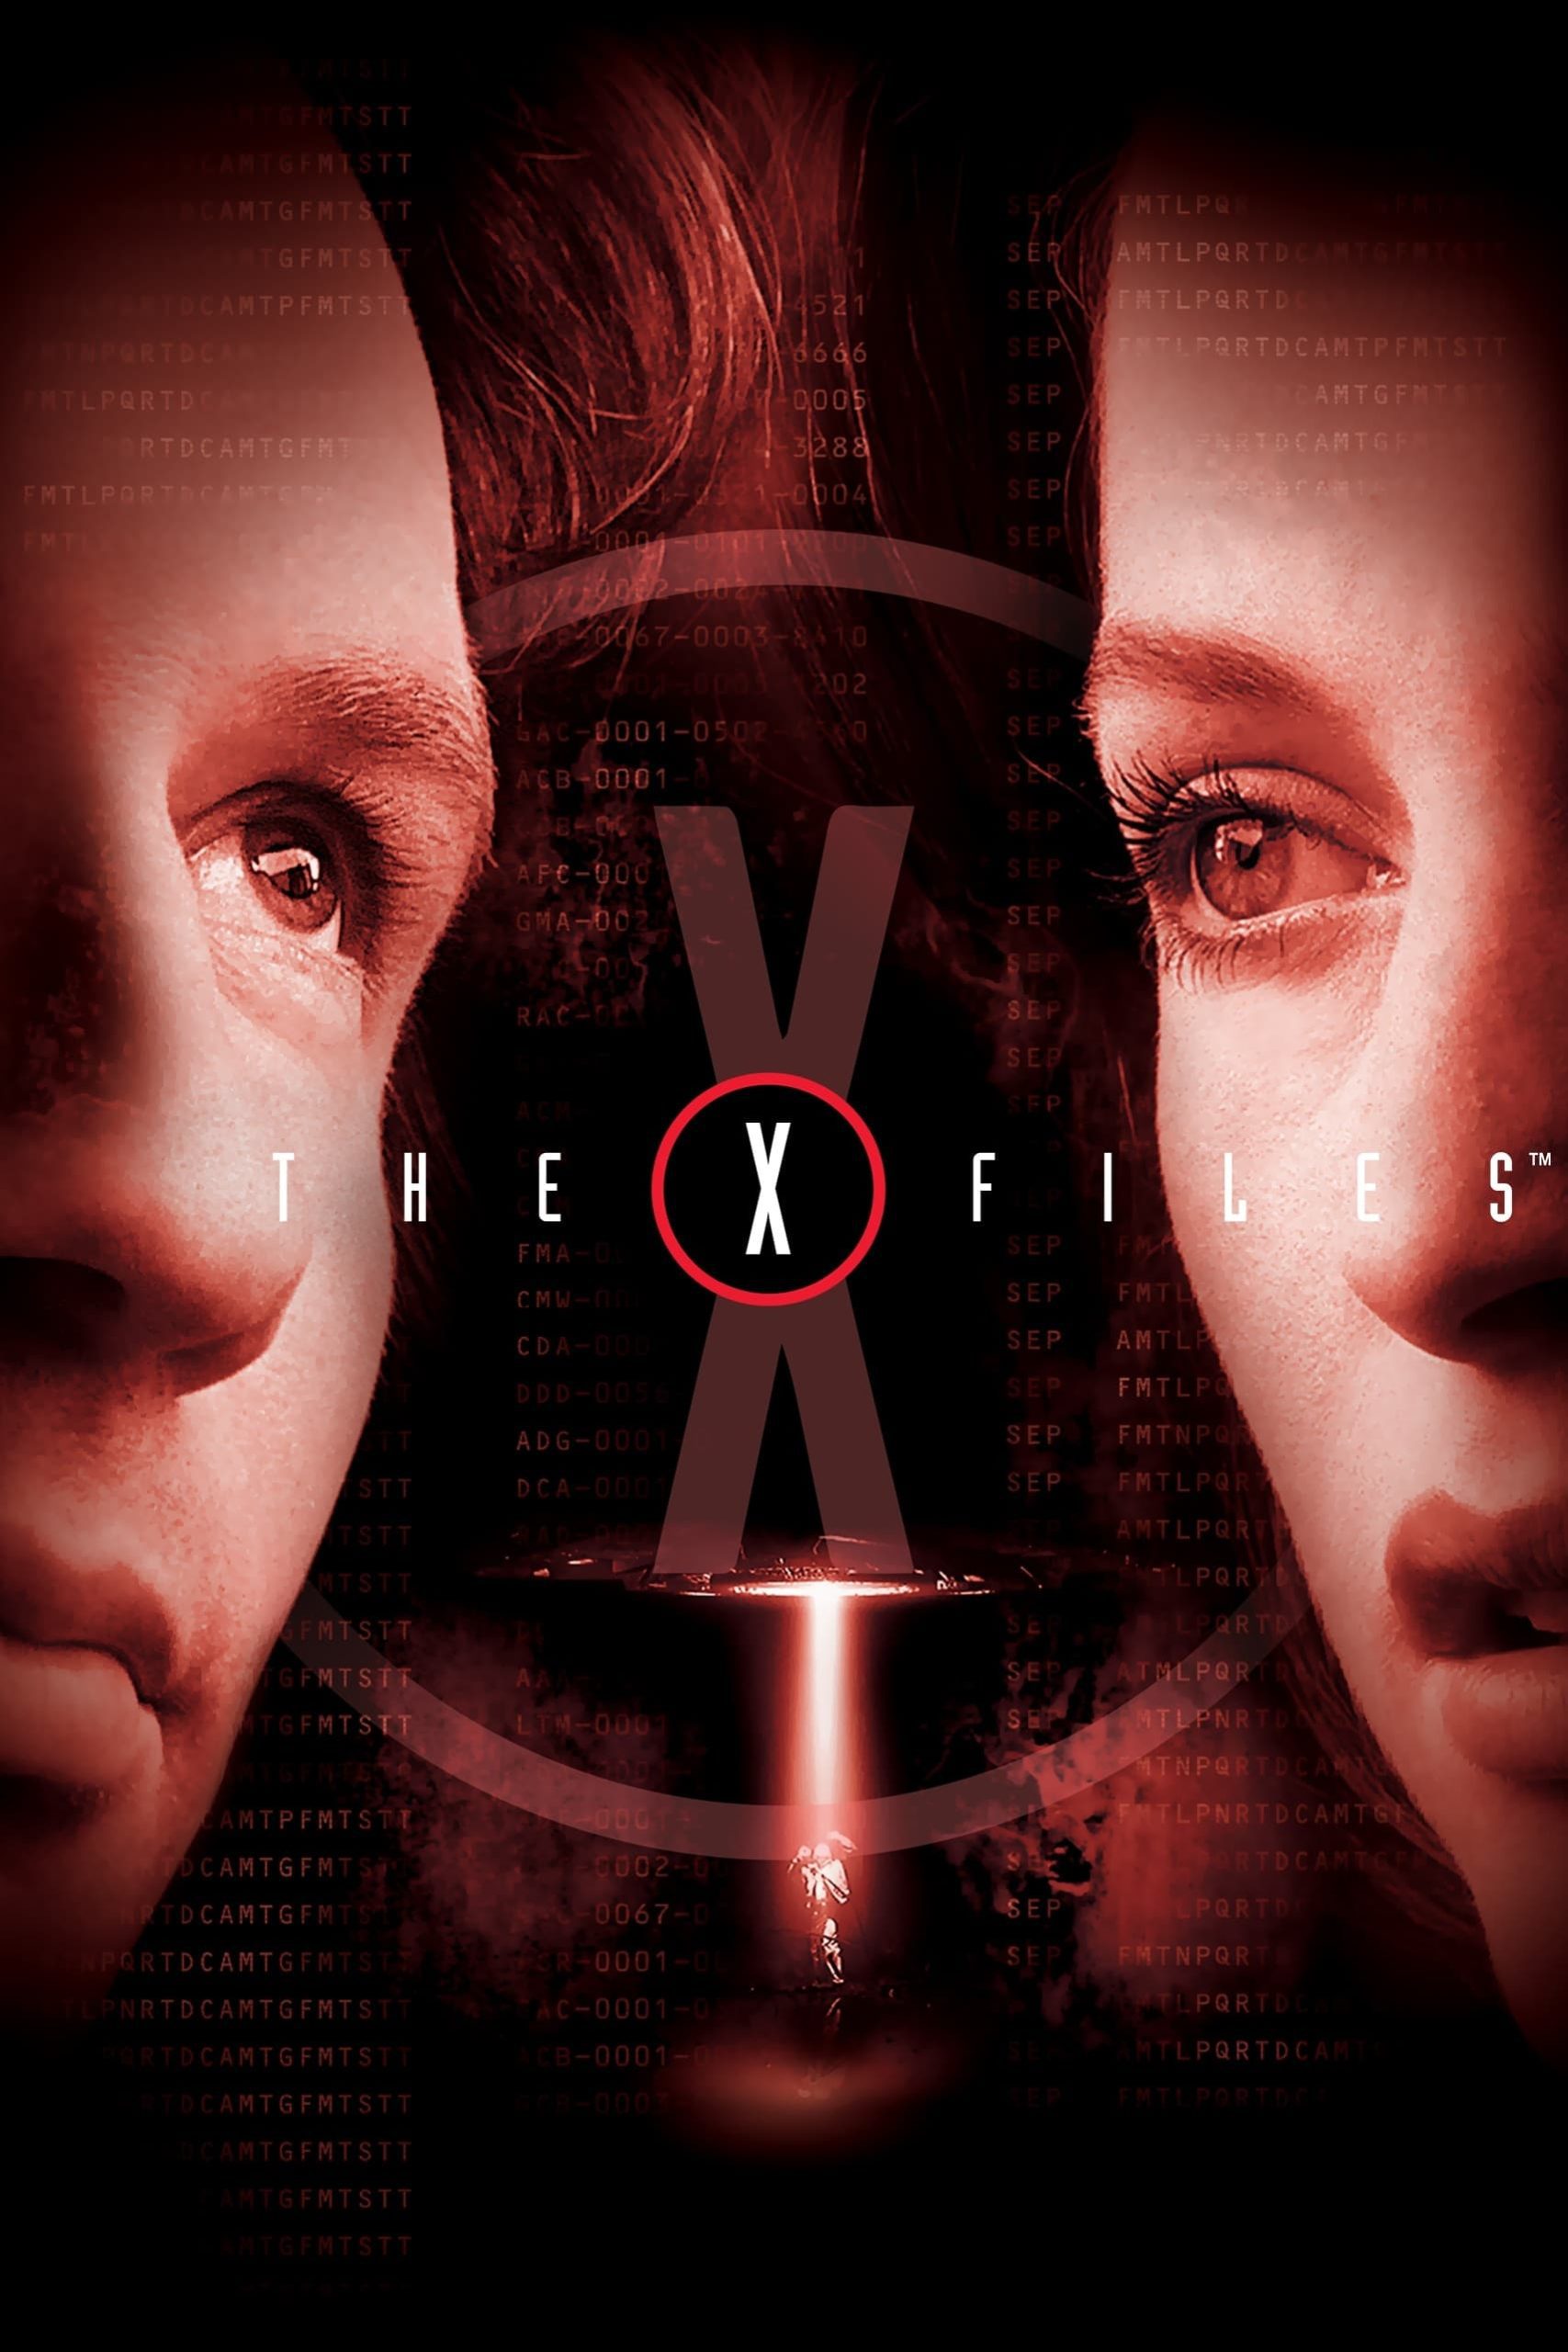 ดูหนังออนไลน์ฟรี The X Files ดิเอ็กซ์ไฟล์ ฝ่าวิกฤตสู้กับอนาคต